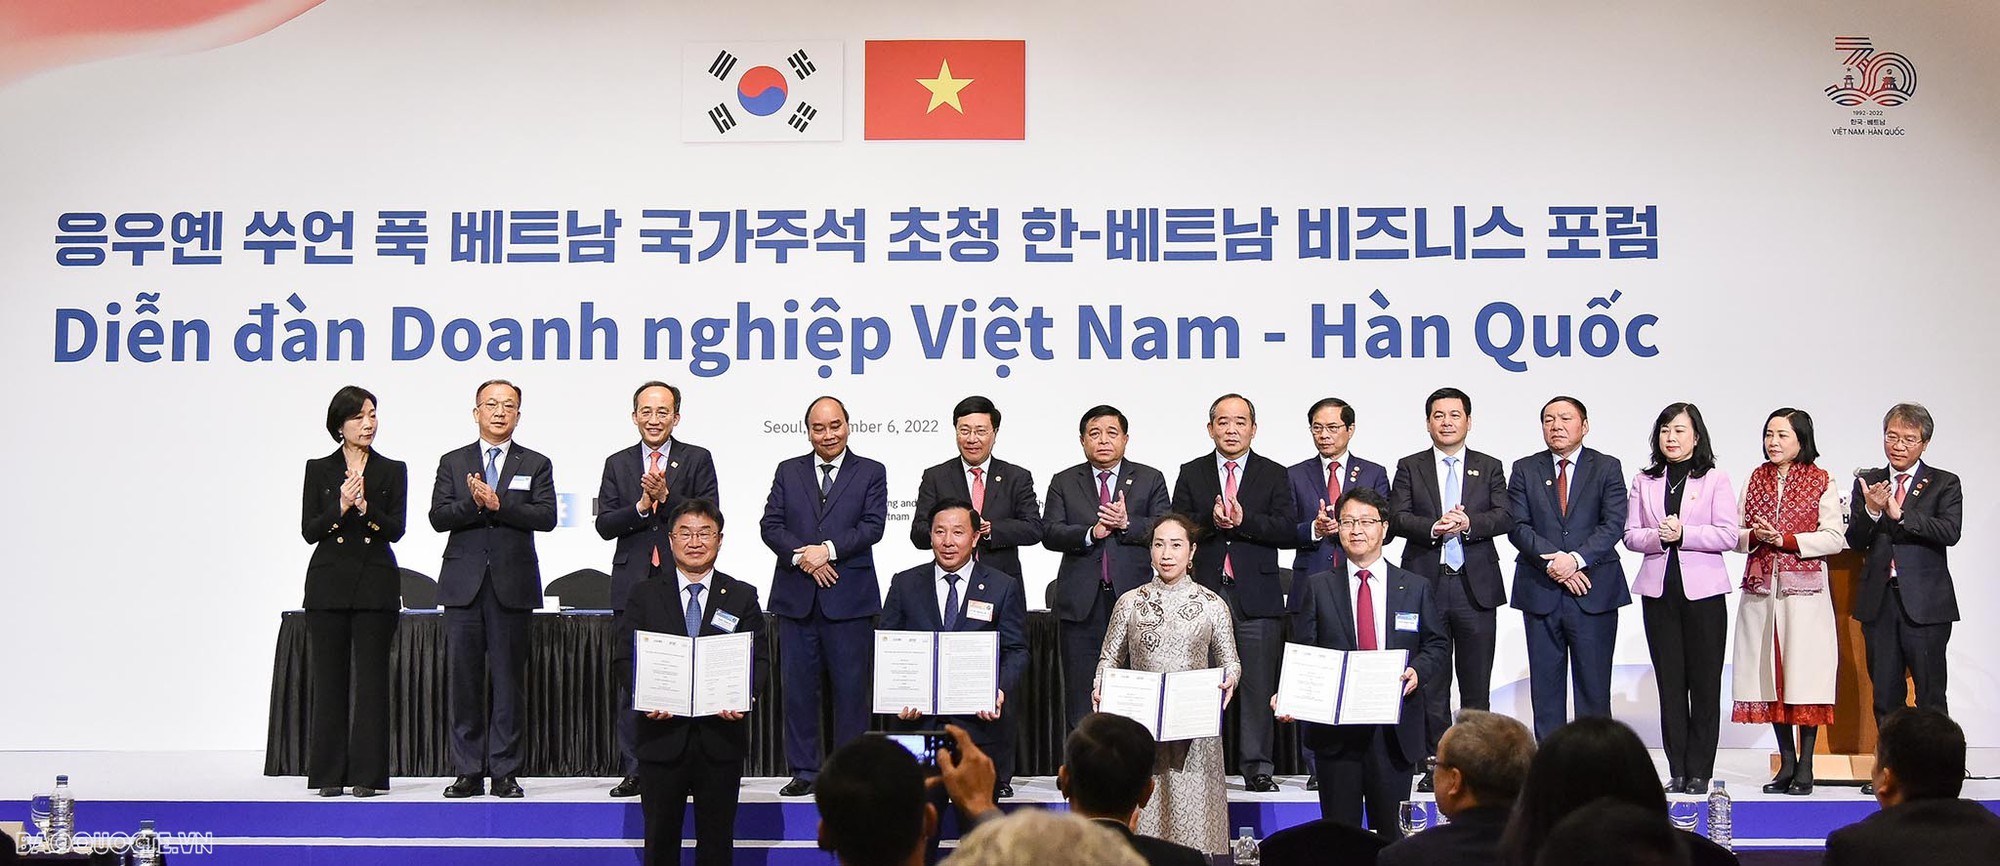 Kết quả chuyến thăm Hàn Quốc của Chủ tịch nước: Điểm khởi hành mới trong quan hệ Việt - Hàn - Ảnh 2.